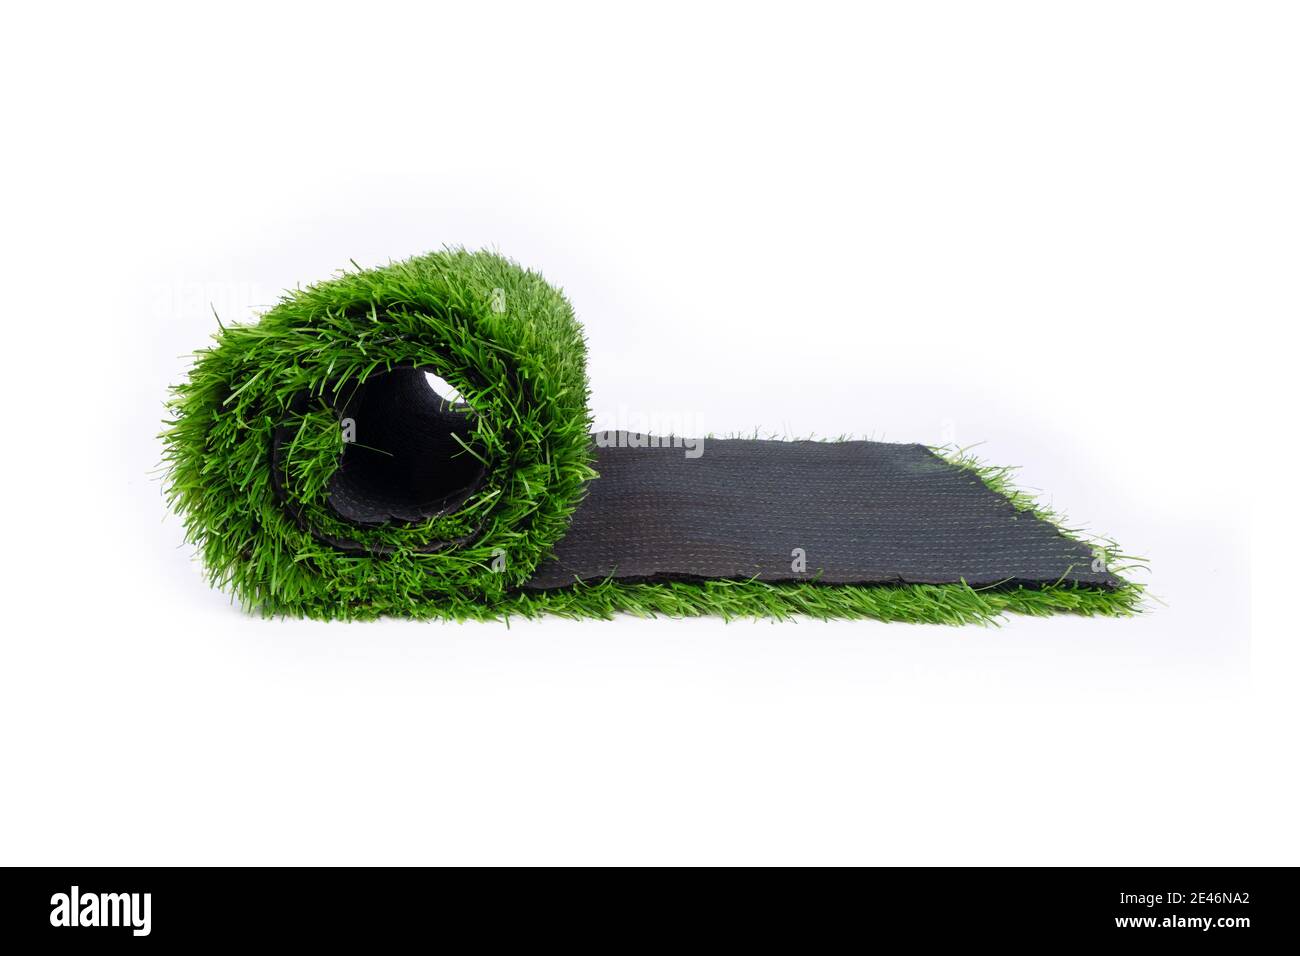 rotolo di erba sintetica isolato su fondo bianco, rivestimento per terreni sportivi Foto Stock